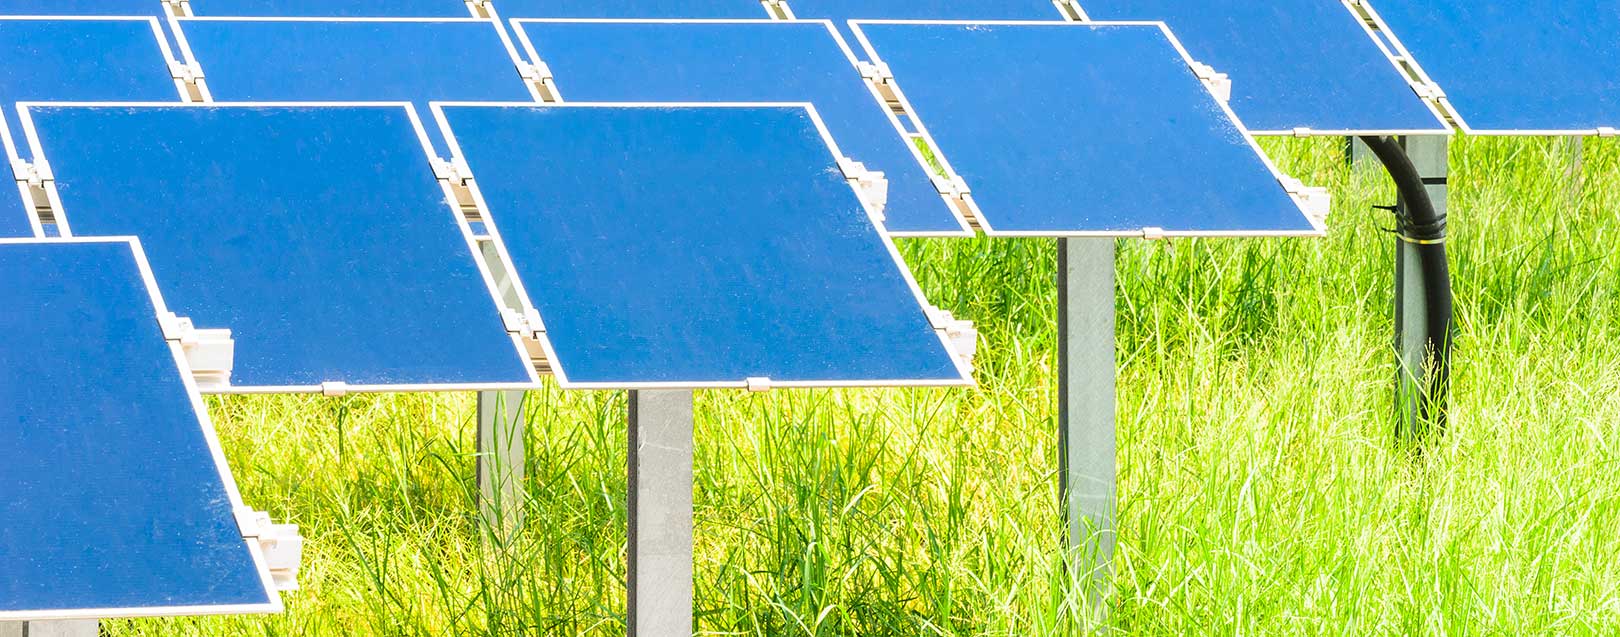 West Bengal govt plans small solar parks